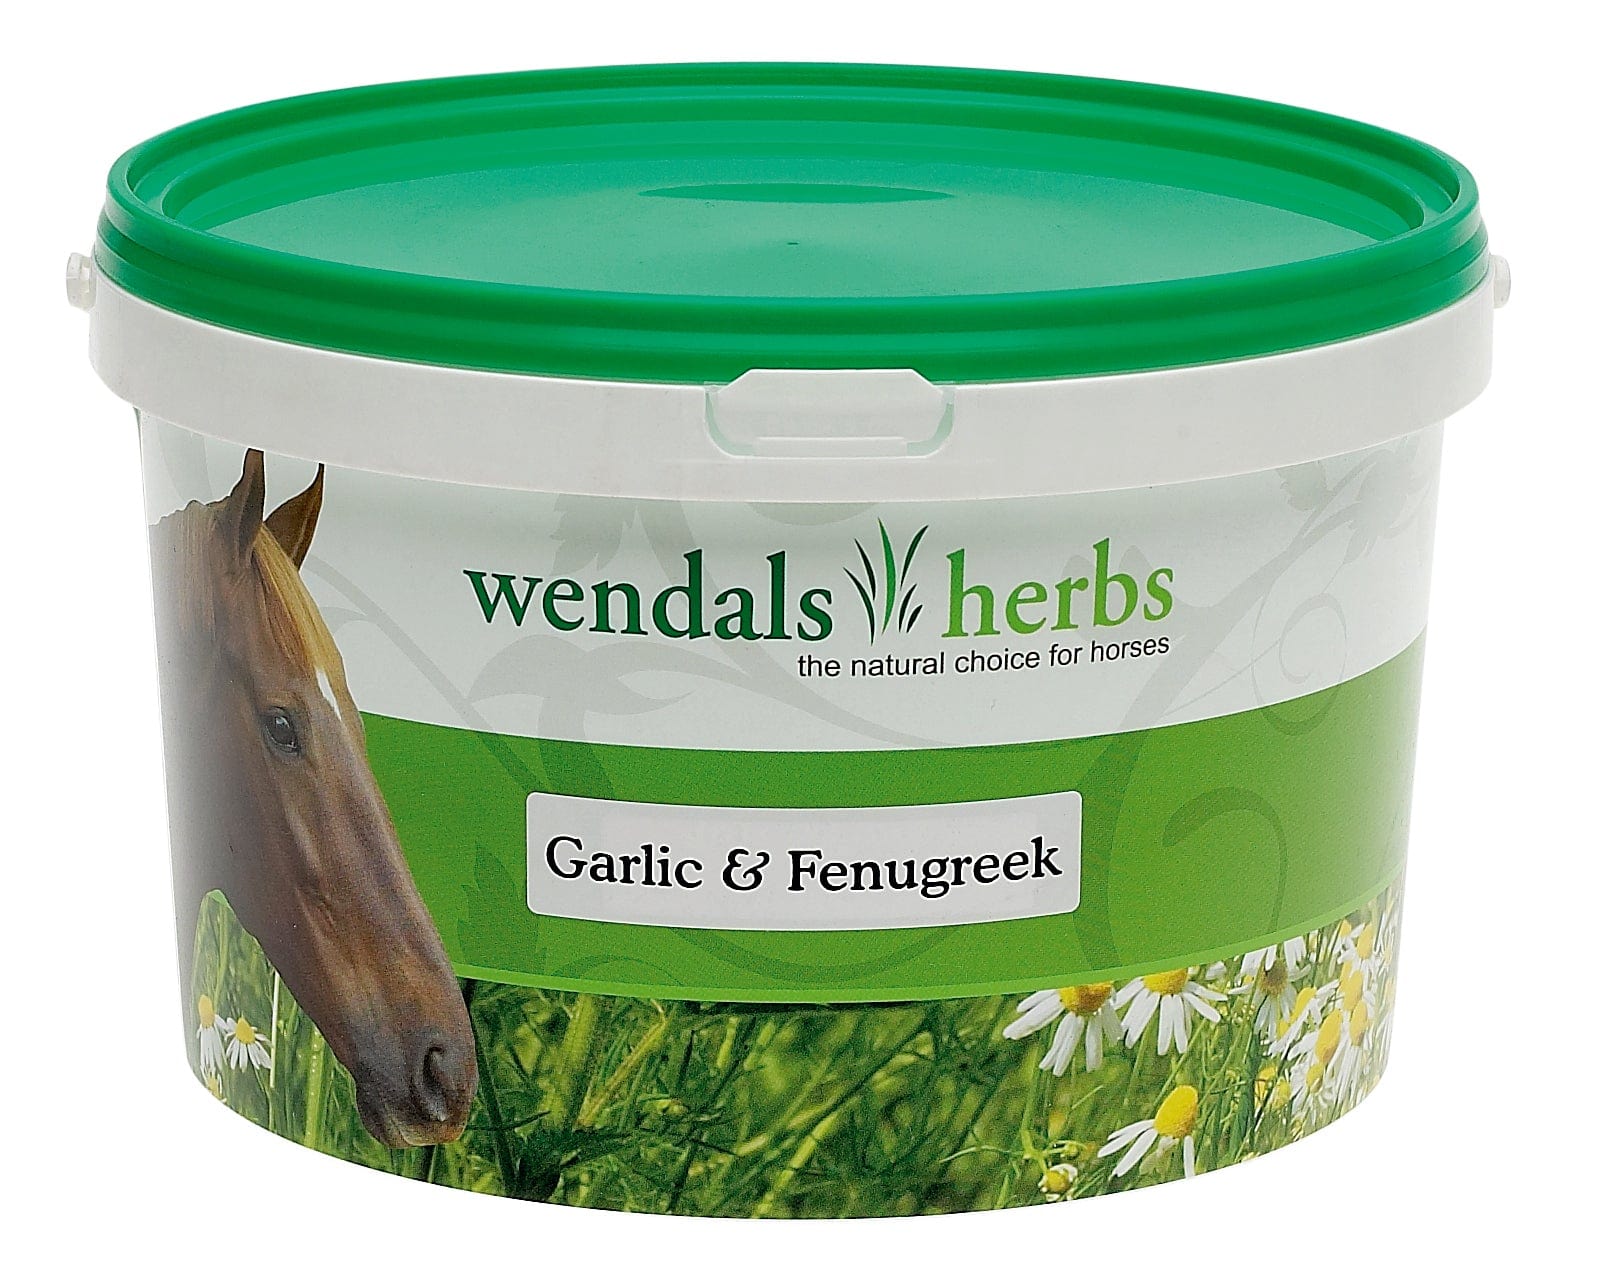 Wendals garlic & fenugreek